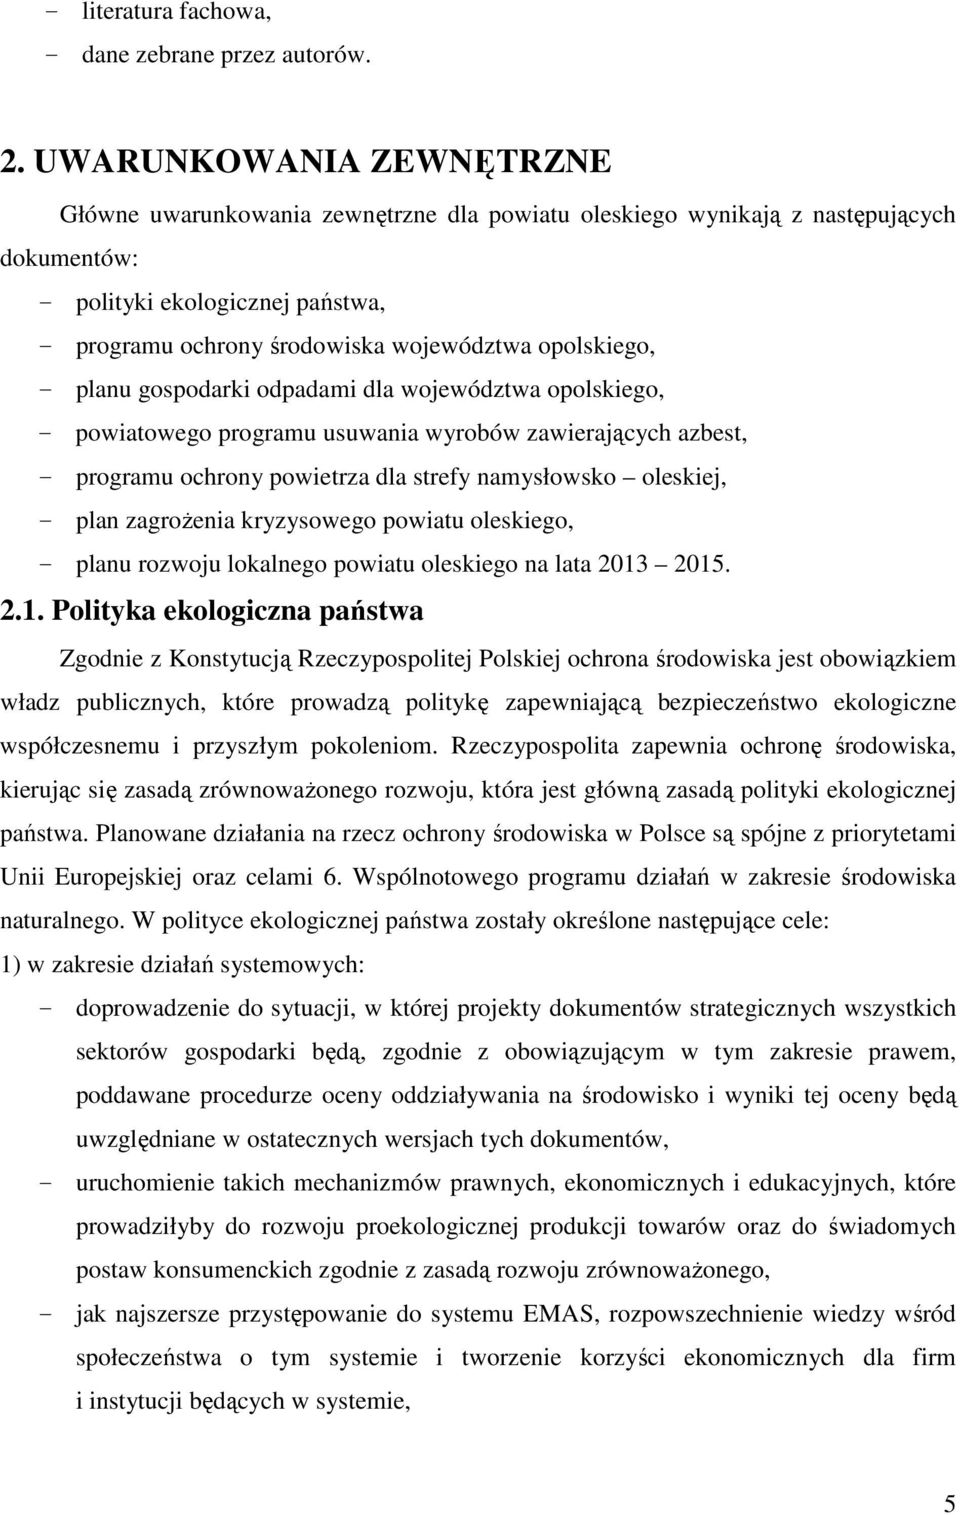 opolskiego, - planu gospodarki odpadami dla województwa opolskiego, - powiatowego programu usuwania wyrobów zawierających azbest, - programu ochrony powietrza dla strefy namysłowsko oleskiej, - plan